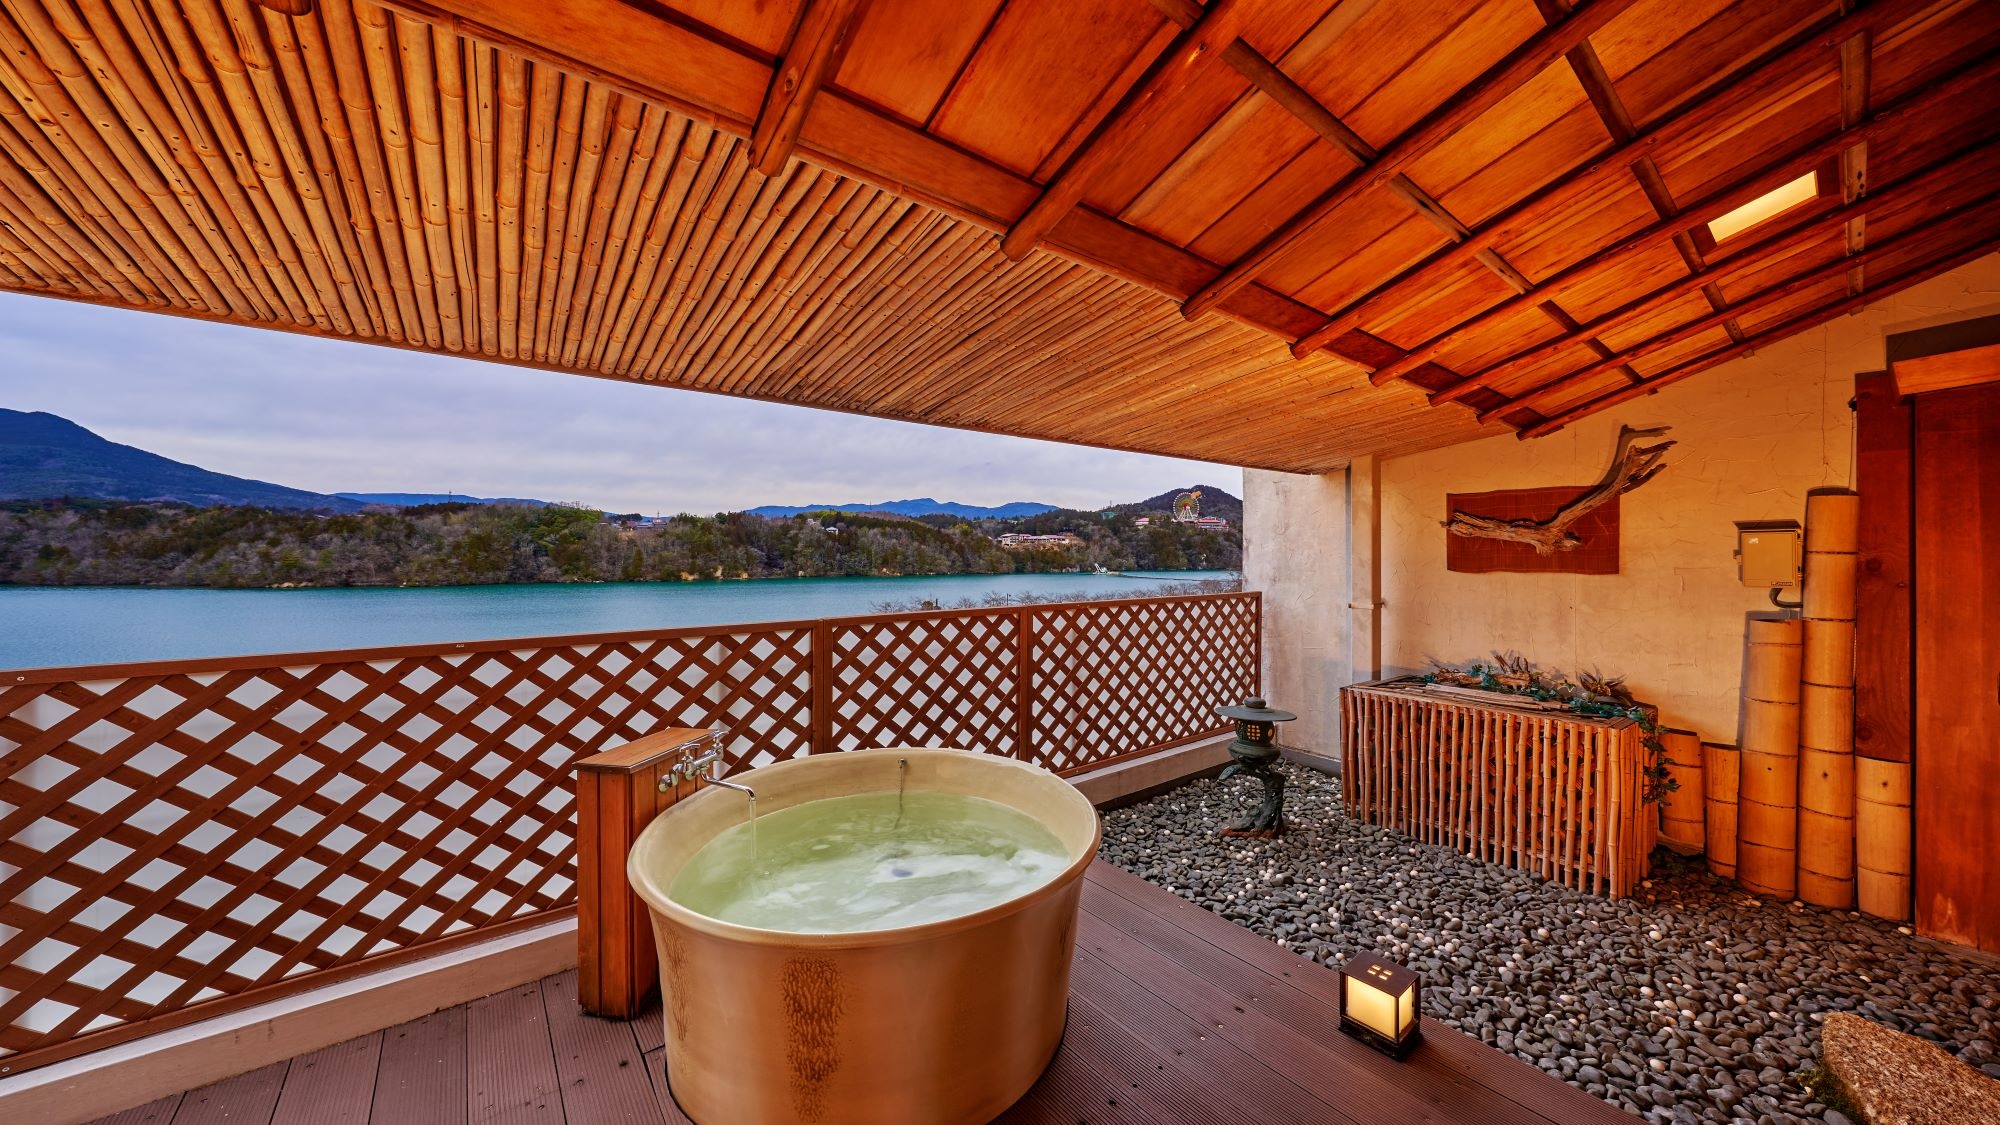 ห้องพักสไตล์ญี่ปุ่น 2 ห้องพร้อมอ่างอาบน้ำโอเพ่นแอร์ที่เหนือกว่า * ตัวอย่างห้องอาบน้ำกลางแจ้งสำหรับแขก